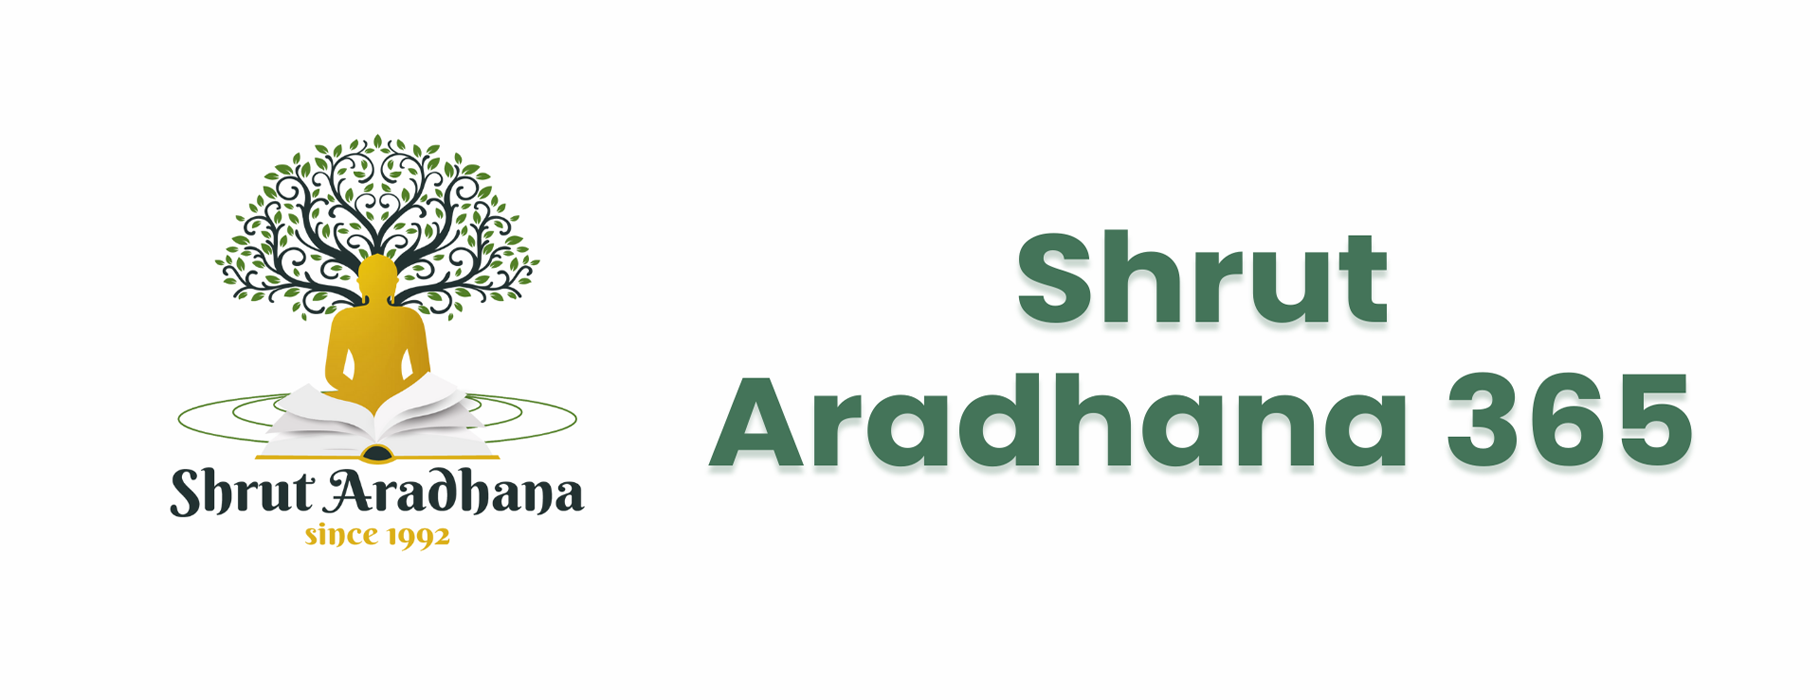 Shrut Aradhana 365